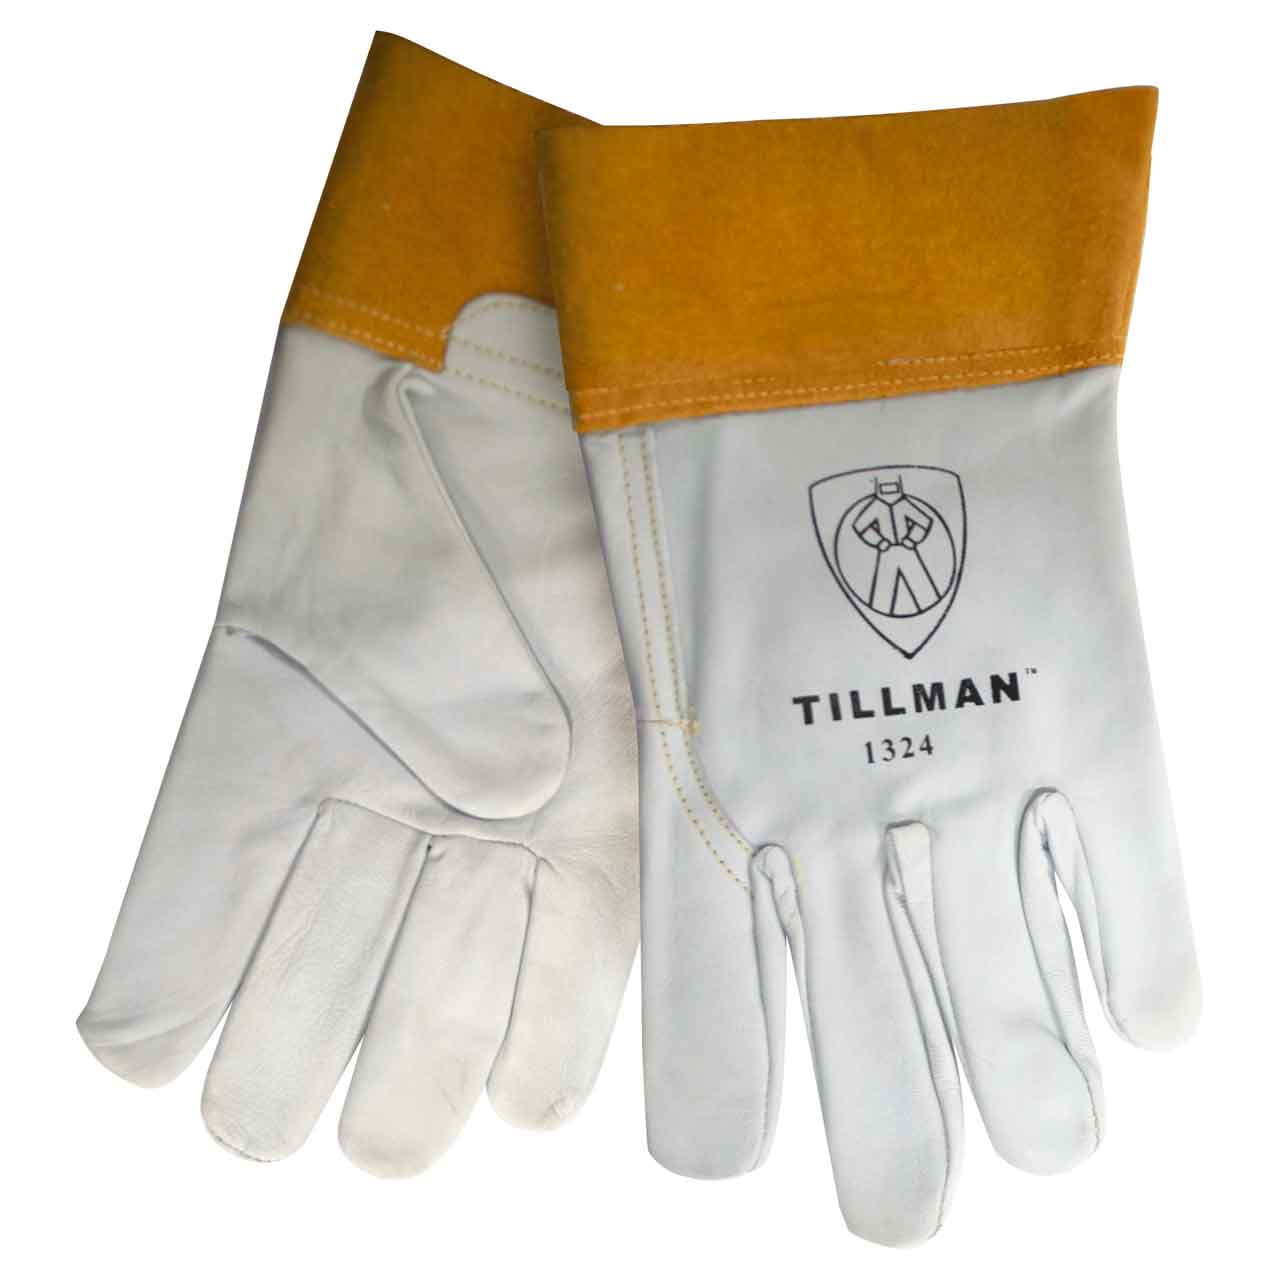 Details about   Argon arc MIG Welding Glove Grain Goat Skin Leather TIG Welder Gloves 